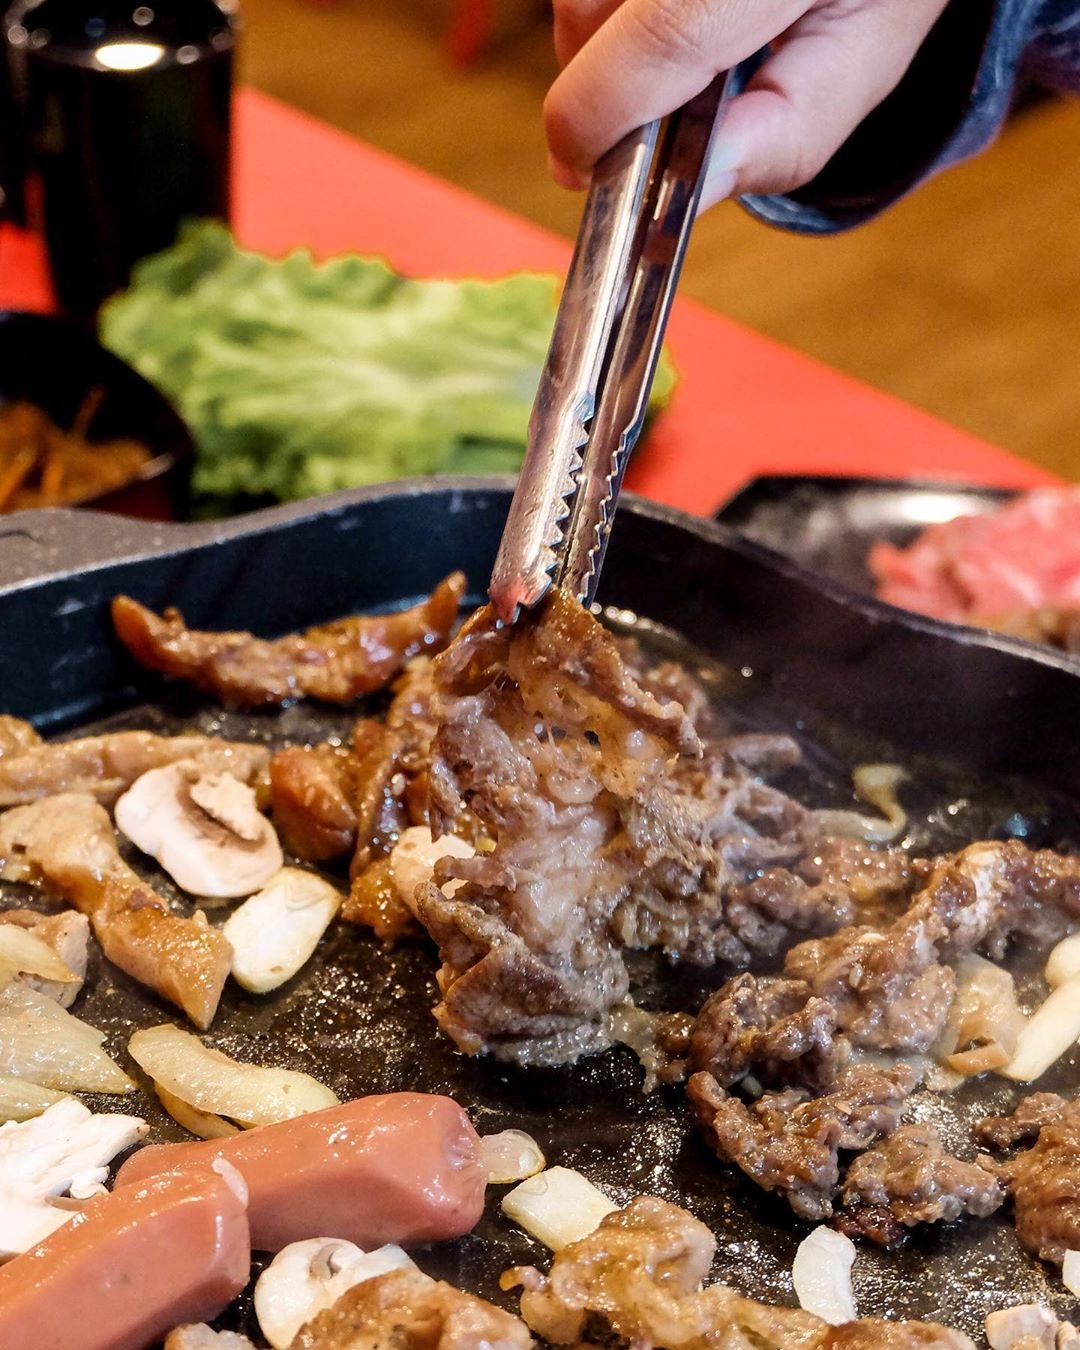 Gogogi Malang – All You Can Eat Korean Grill